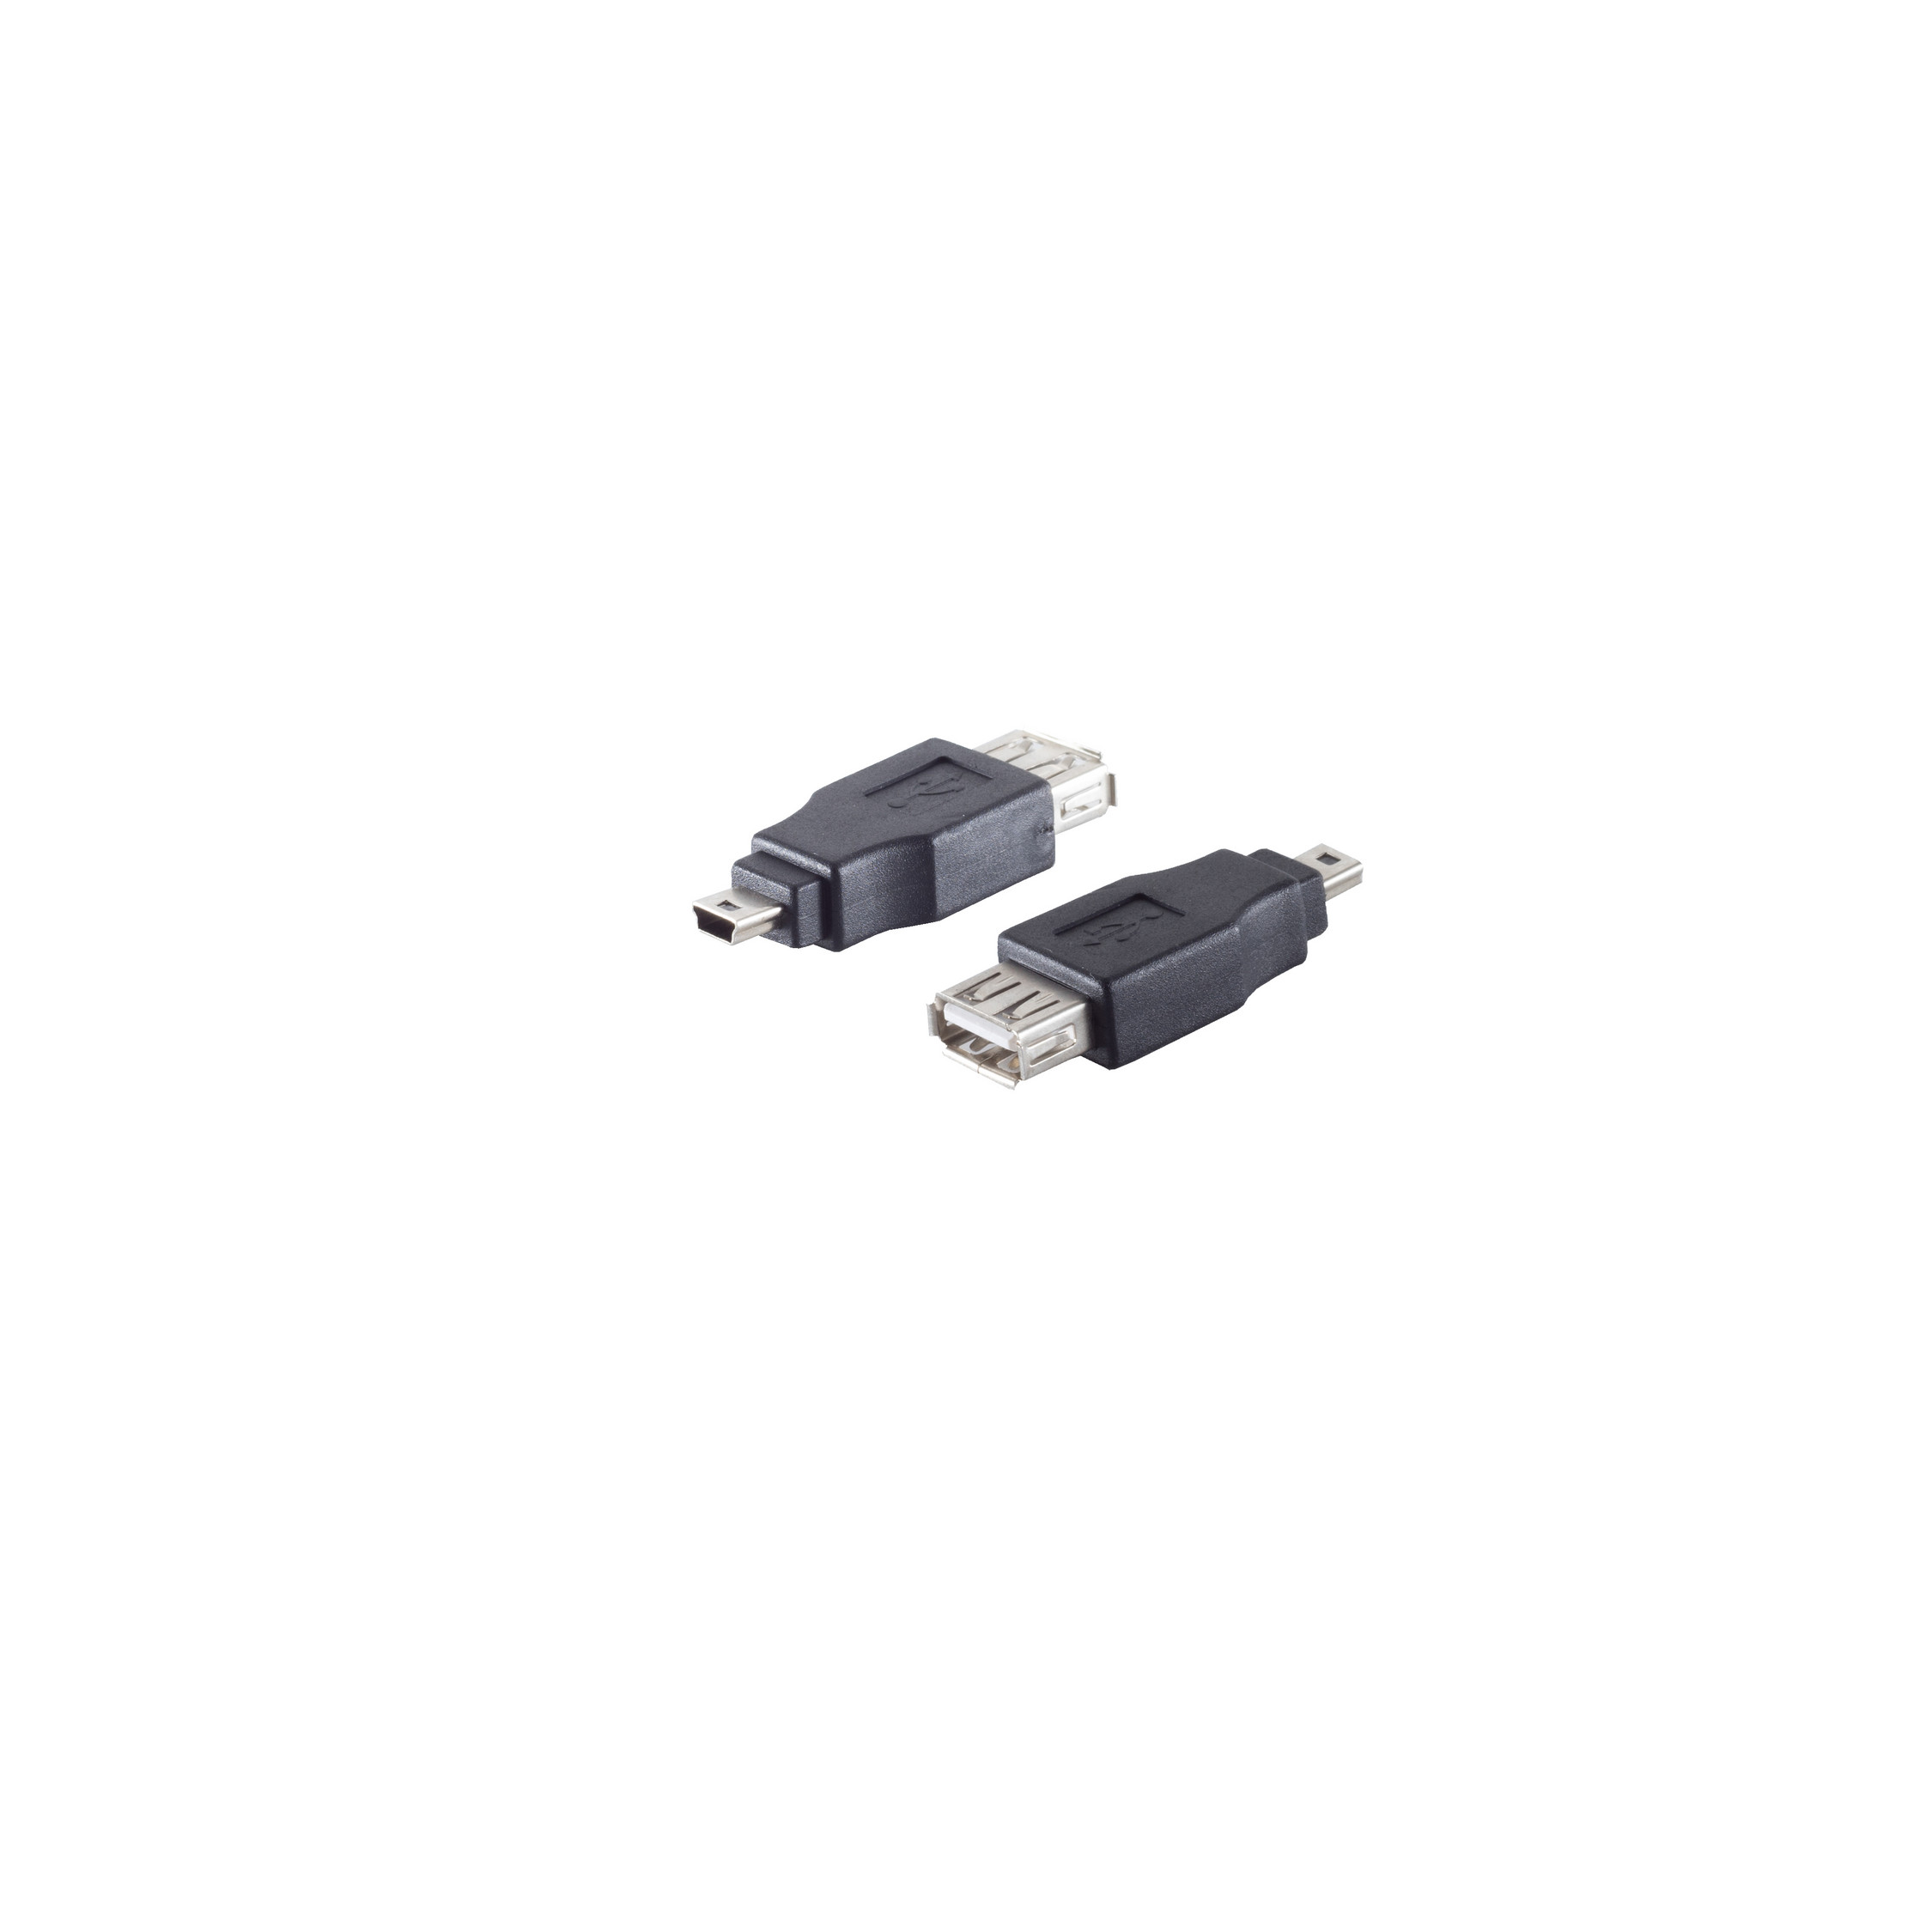 SHIVERPEAKS USB Adapter 2.0 / USB B 5p Stecker Kupplung Adapter, grau A USB Mini